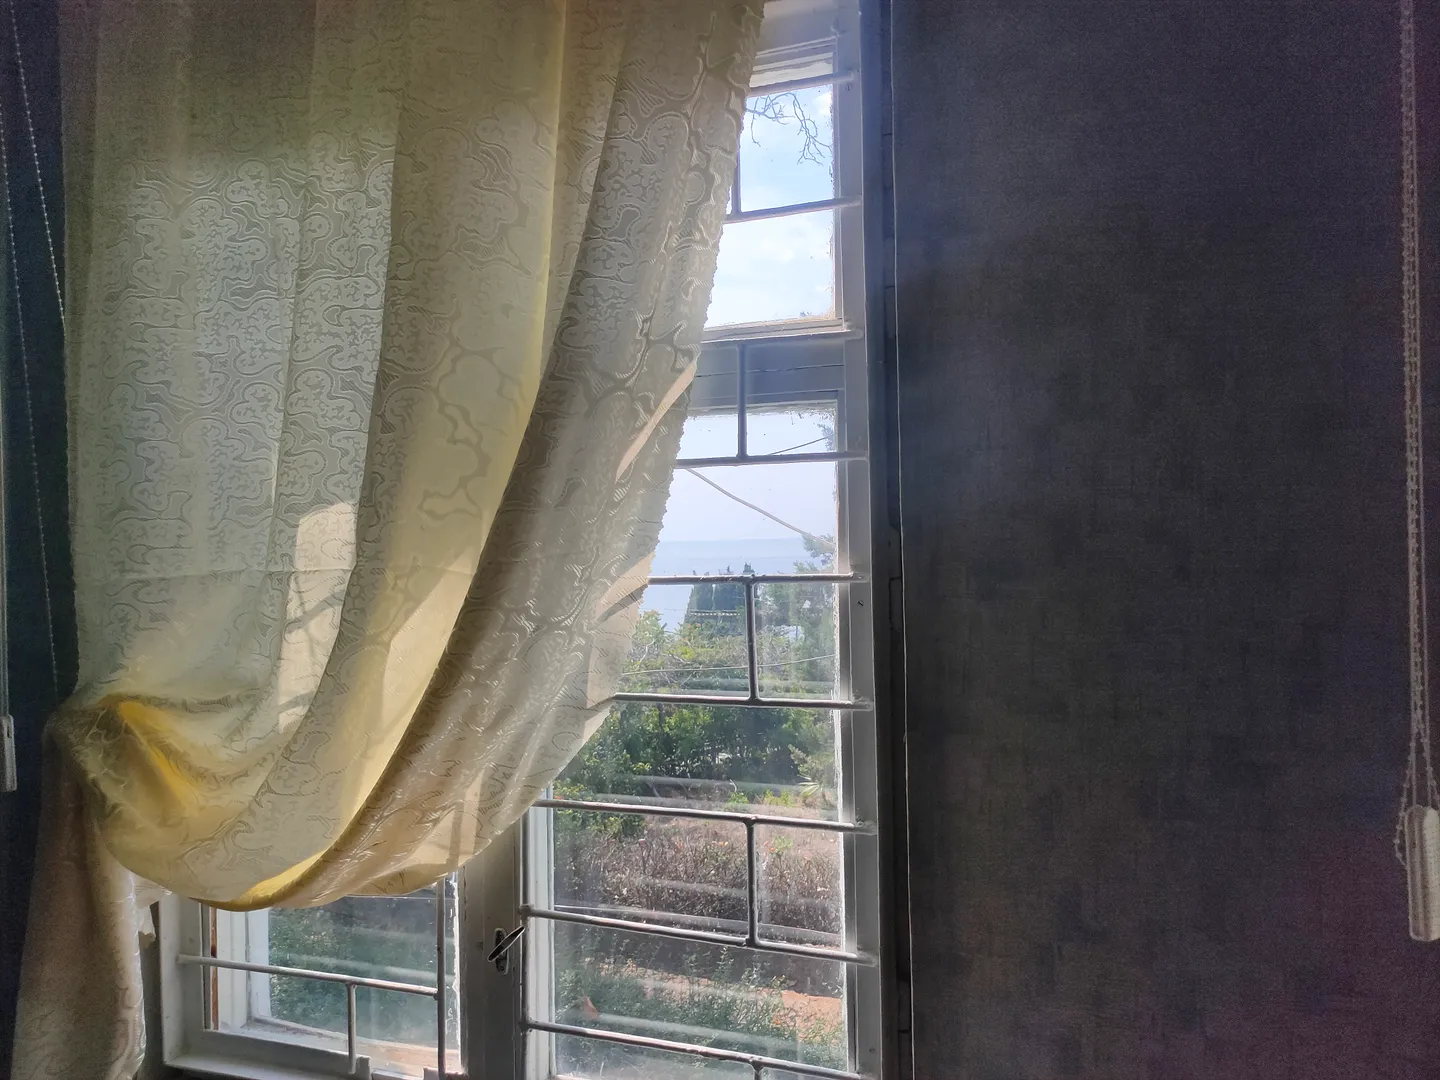 Окна деревянные с решётками. Вид из окна на море и ботанический сад. В спальне есть сплит.система (кондиционер).